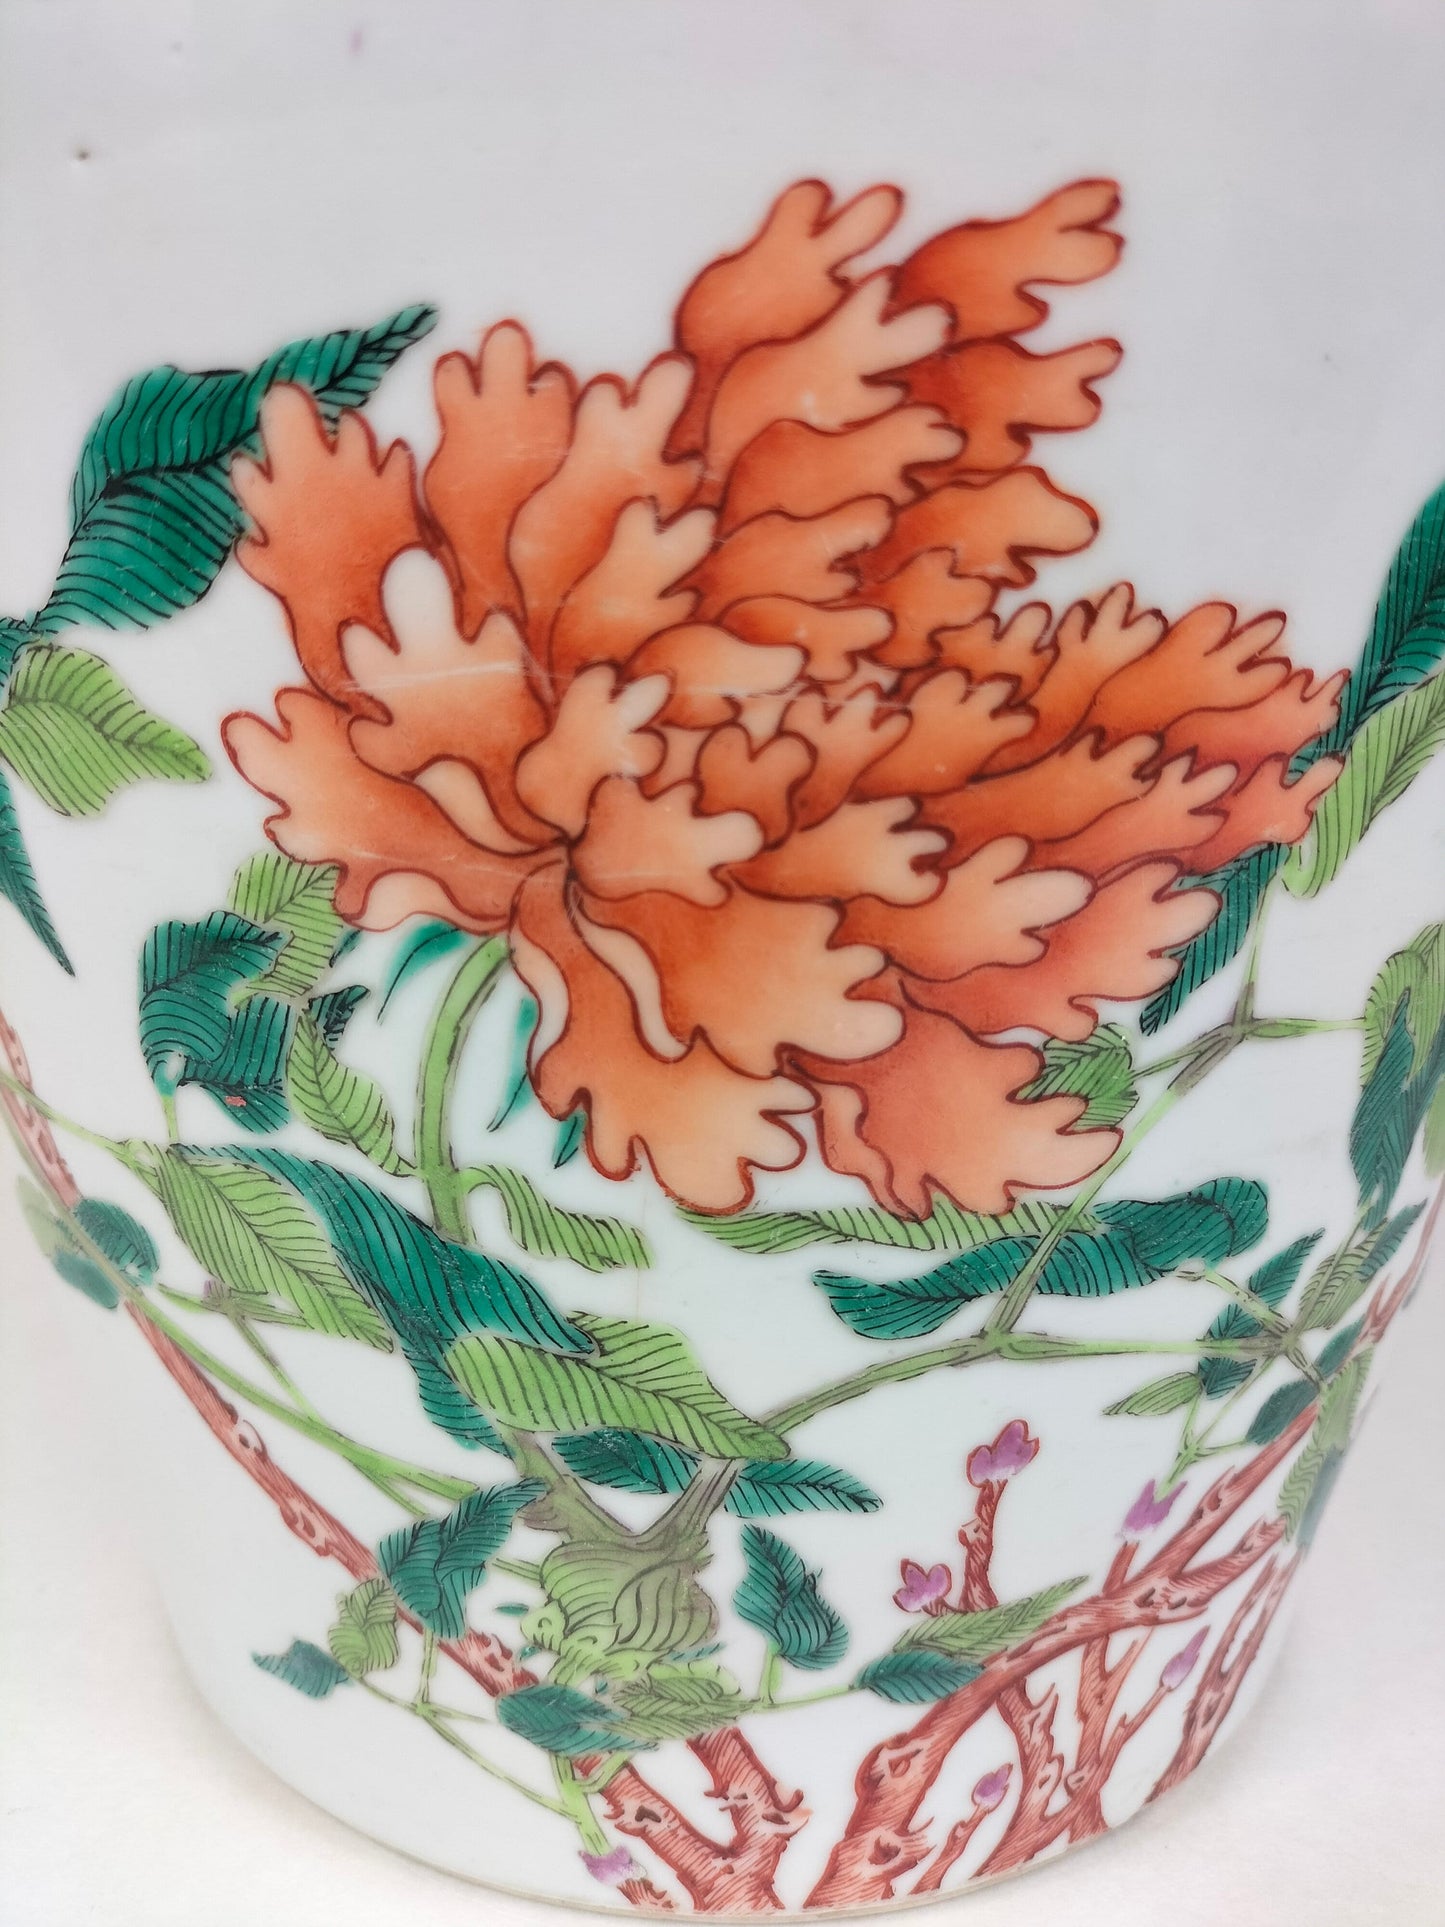 装饰有花卉的中国古董粉彩花盆 // 清朝 - 19 世纪